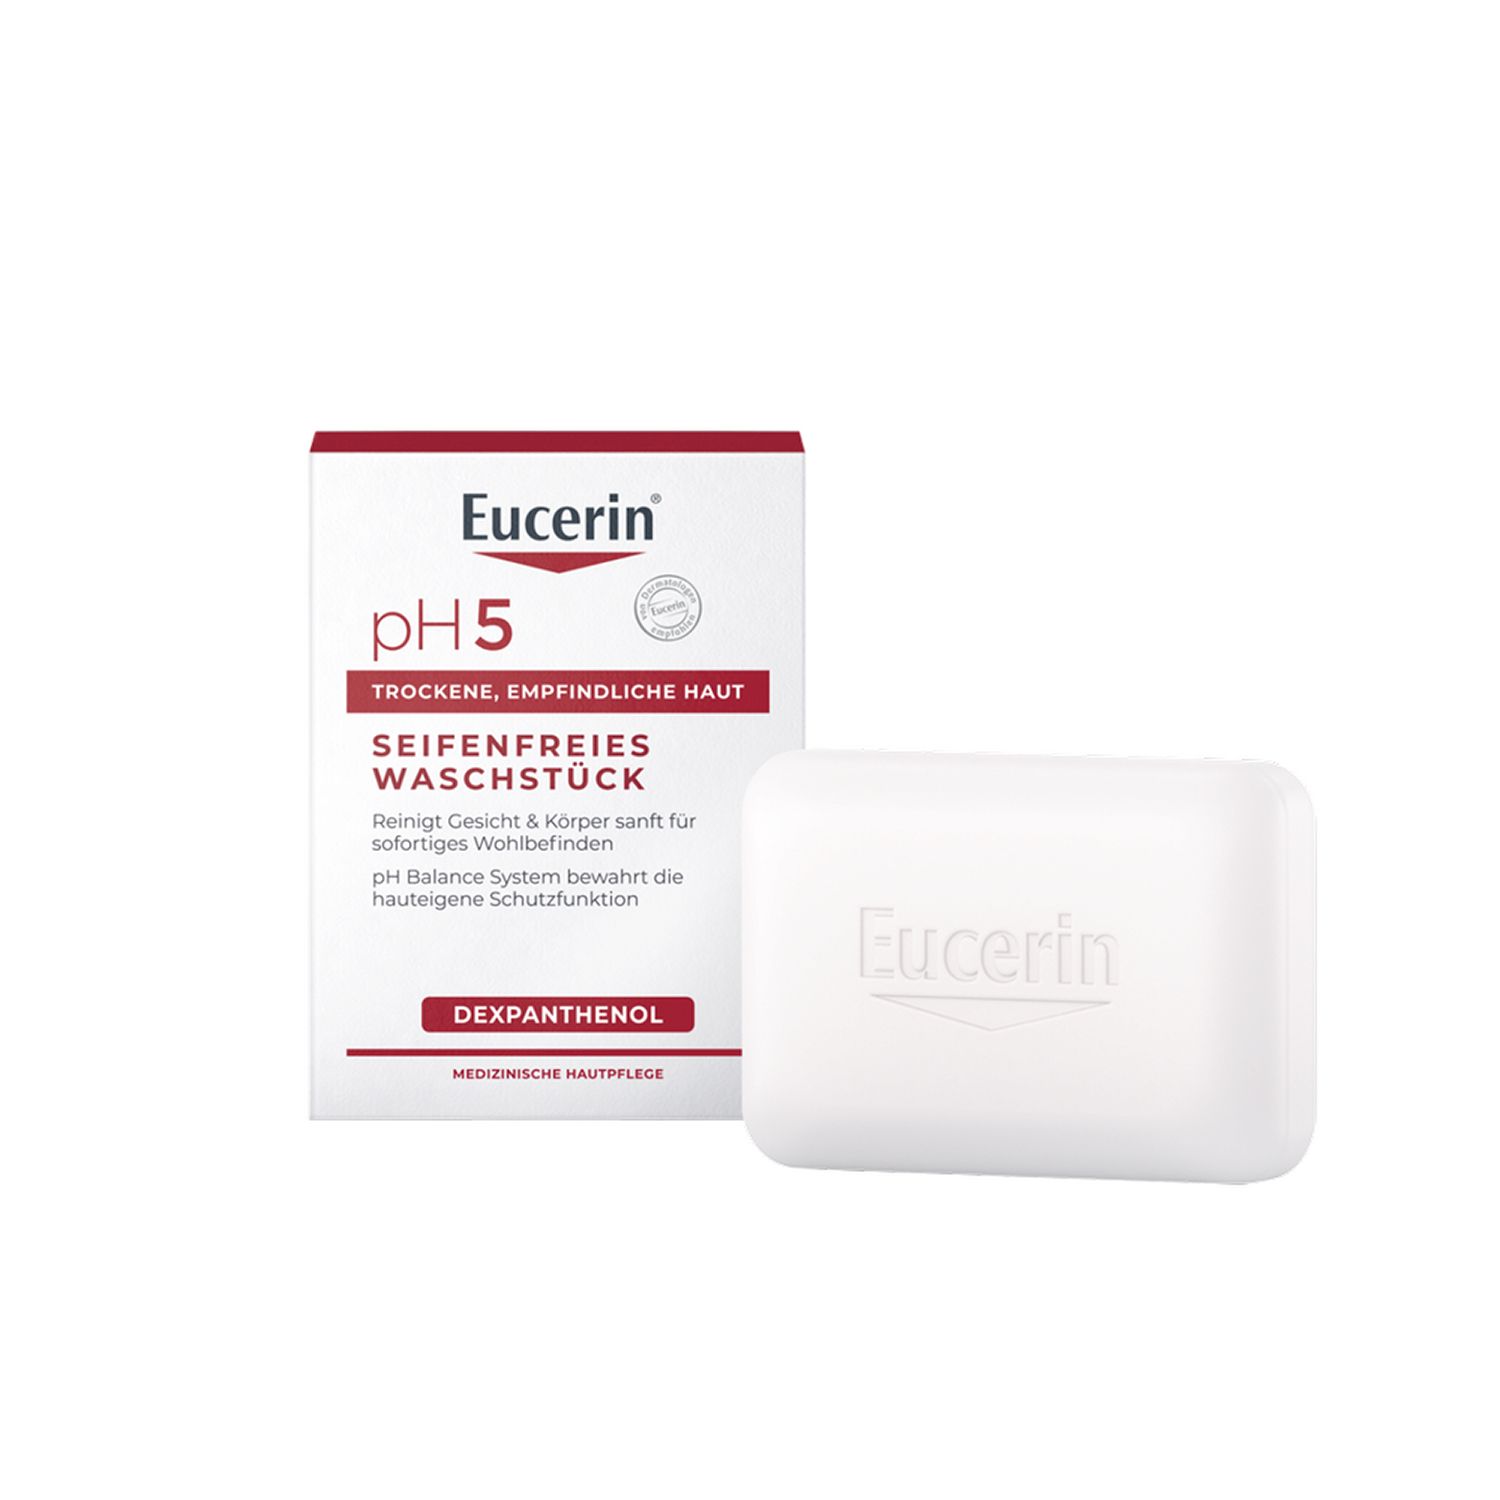 Eucerin® pH5 Seifenfreies Waschstück – reinigt empfindliche und trockene Haut besonders sanft & bewahrt die Schutzfunktion der Haut- Jetzt 20 % sparen* mit eucerin20